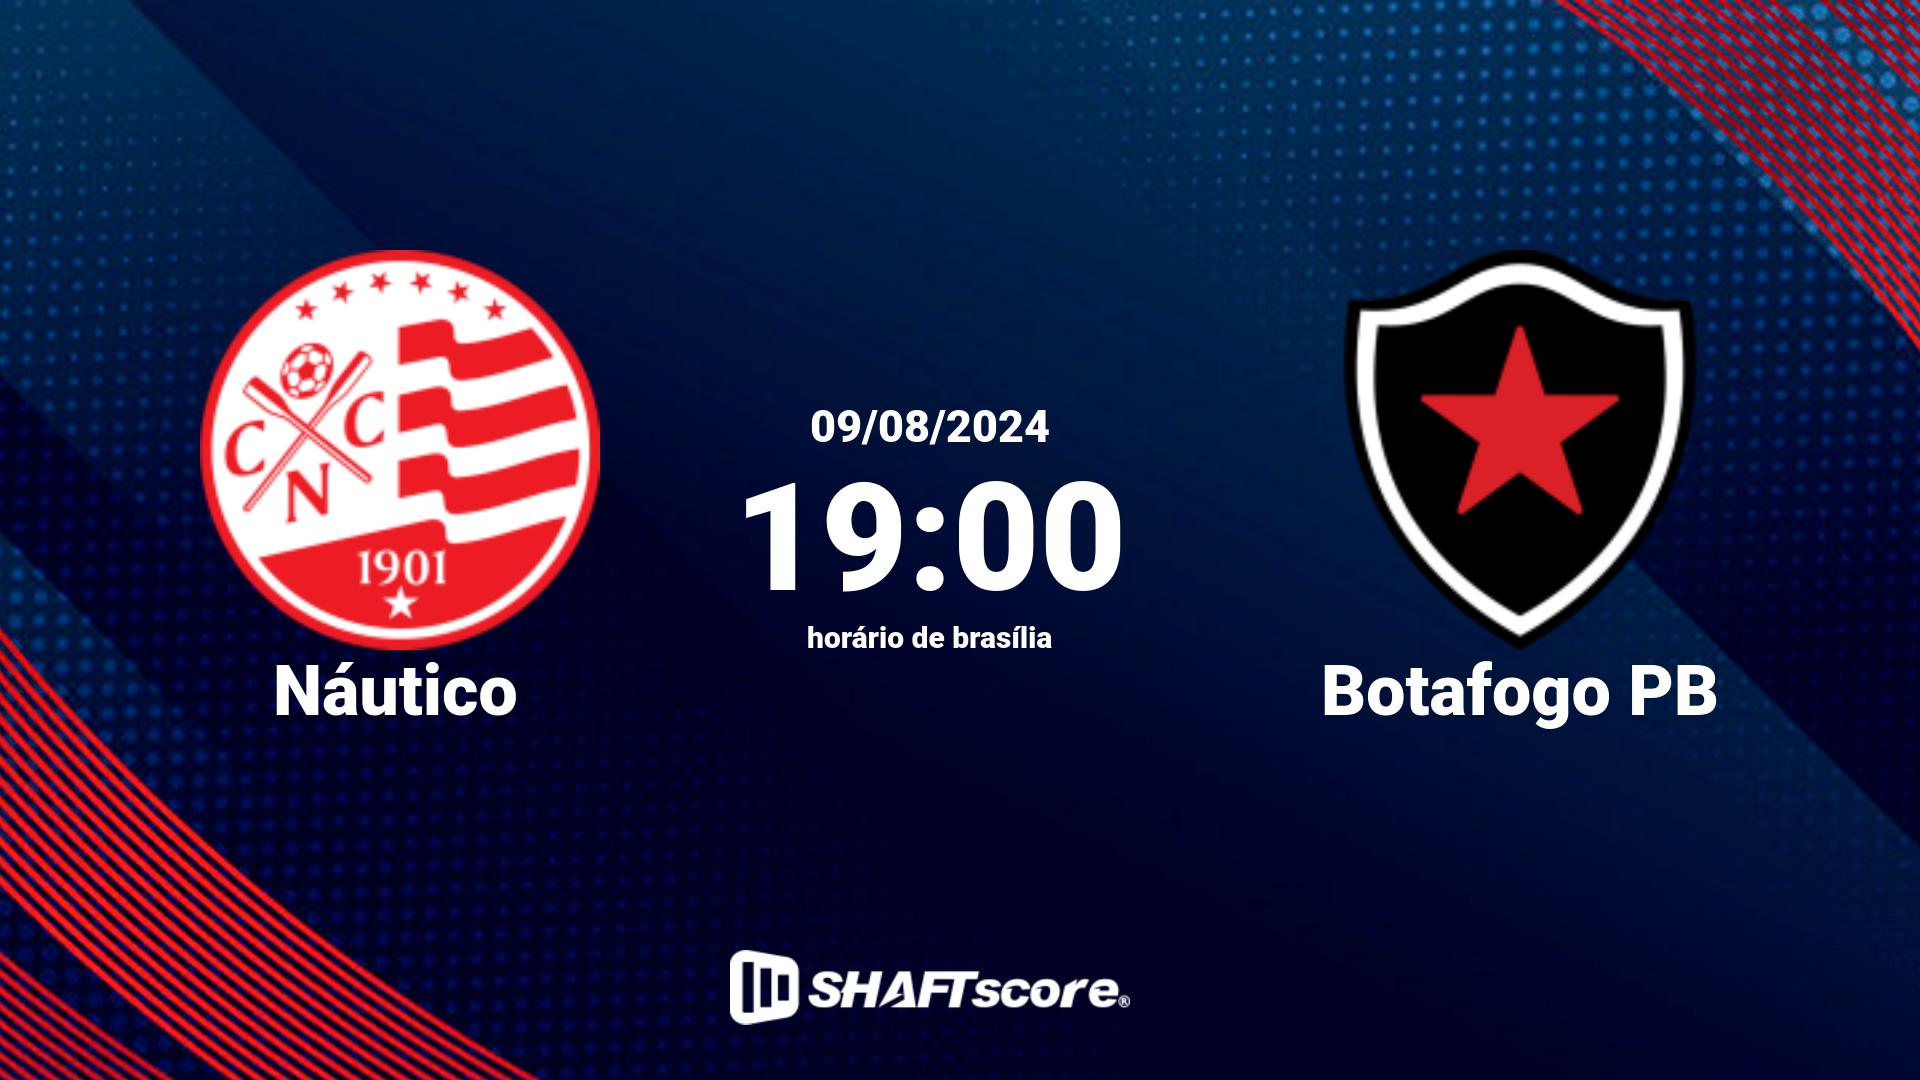 Estatísticas do jogo Náutico vs Botafogo PB 09.08 19:00